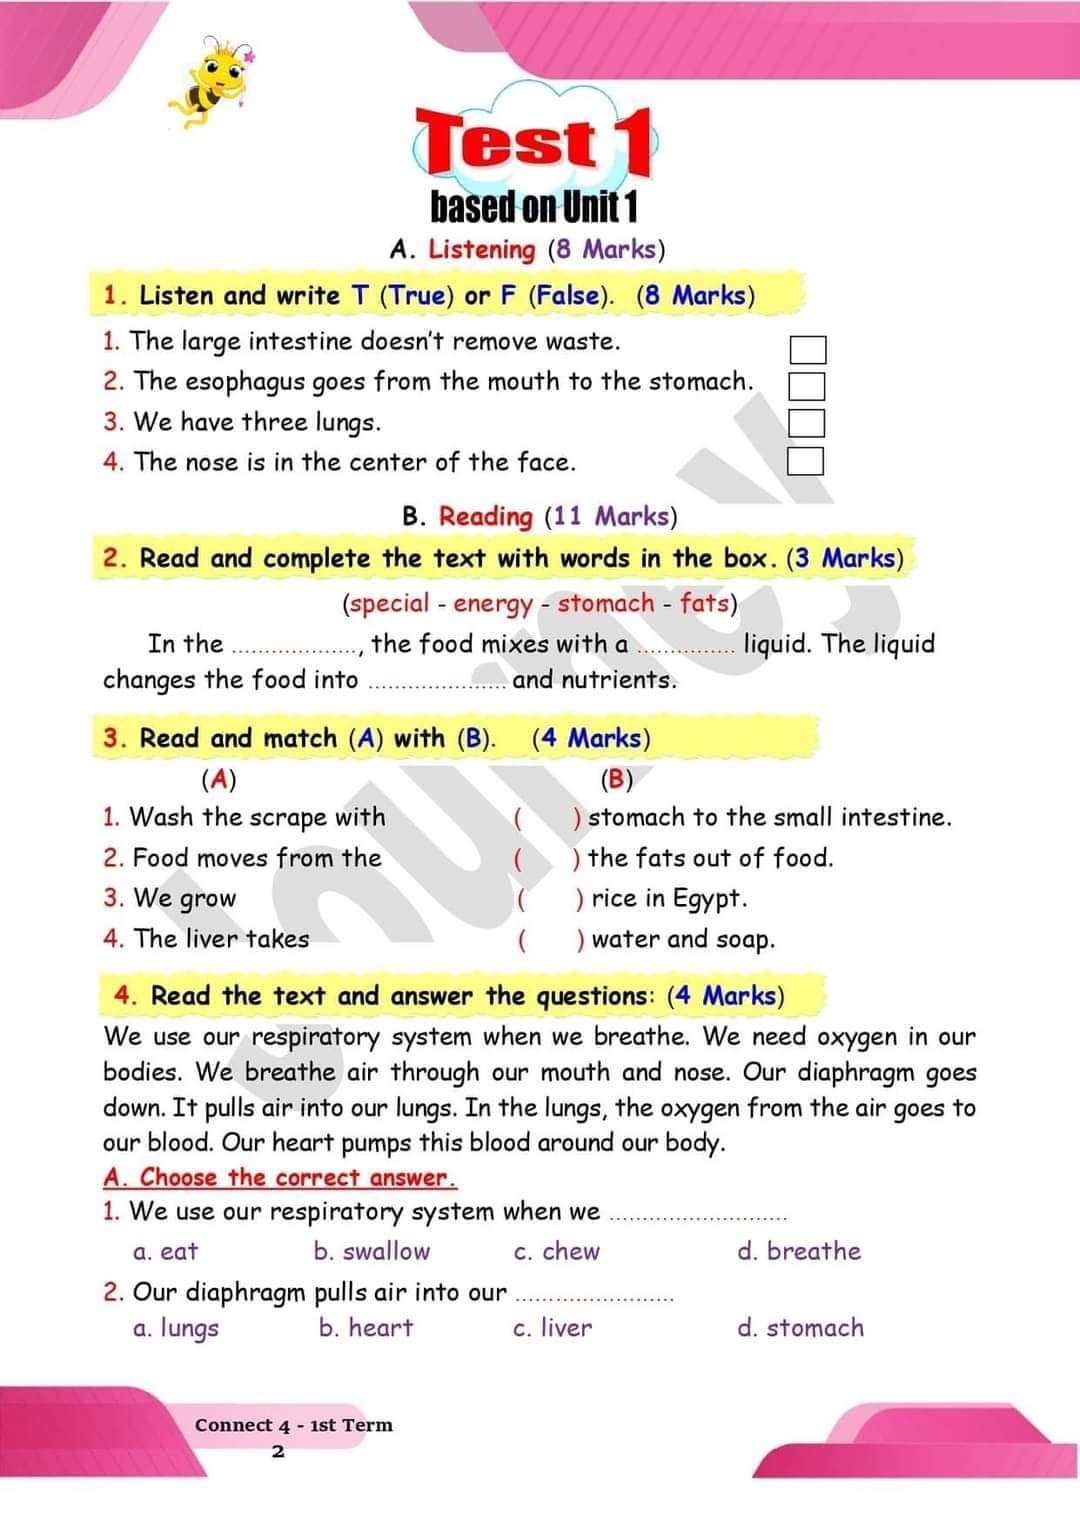 امتحانات انجليزي للصف الرابع الابتدائي - connect 4